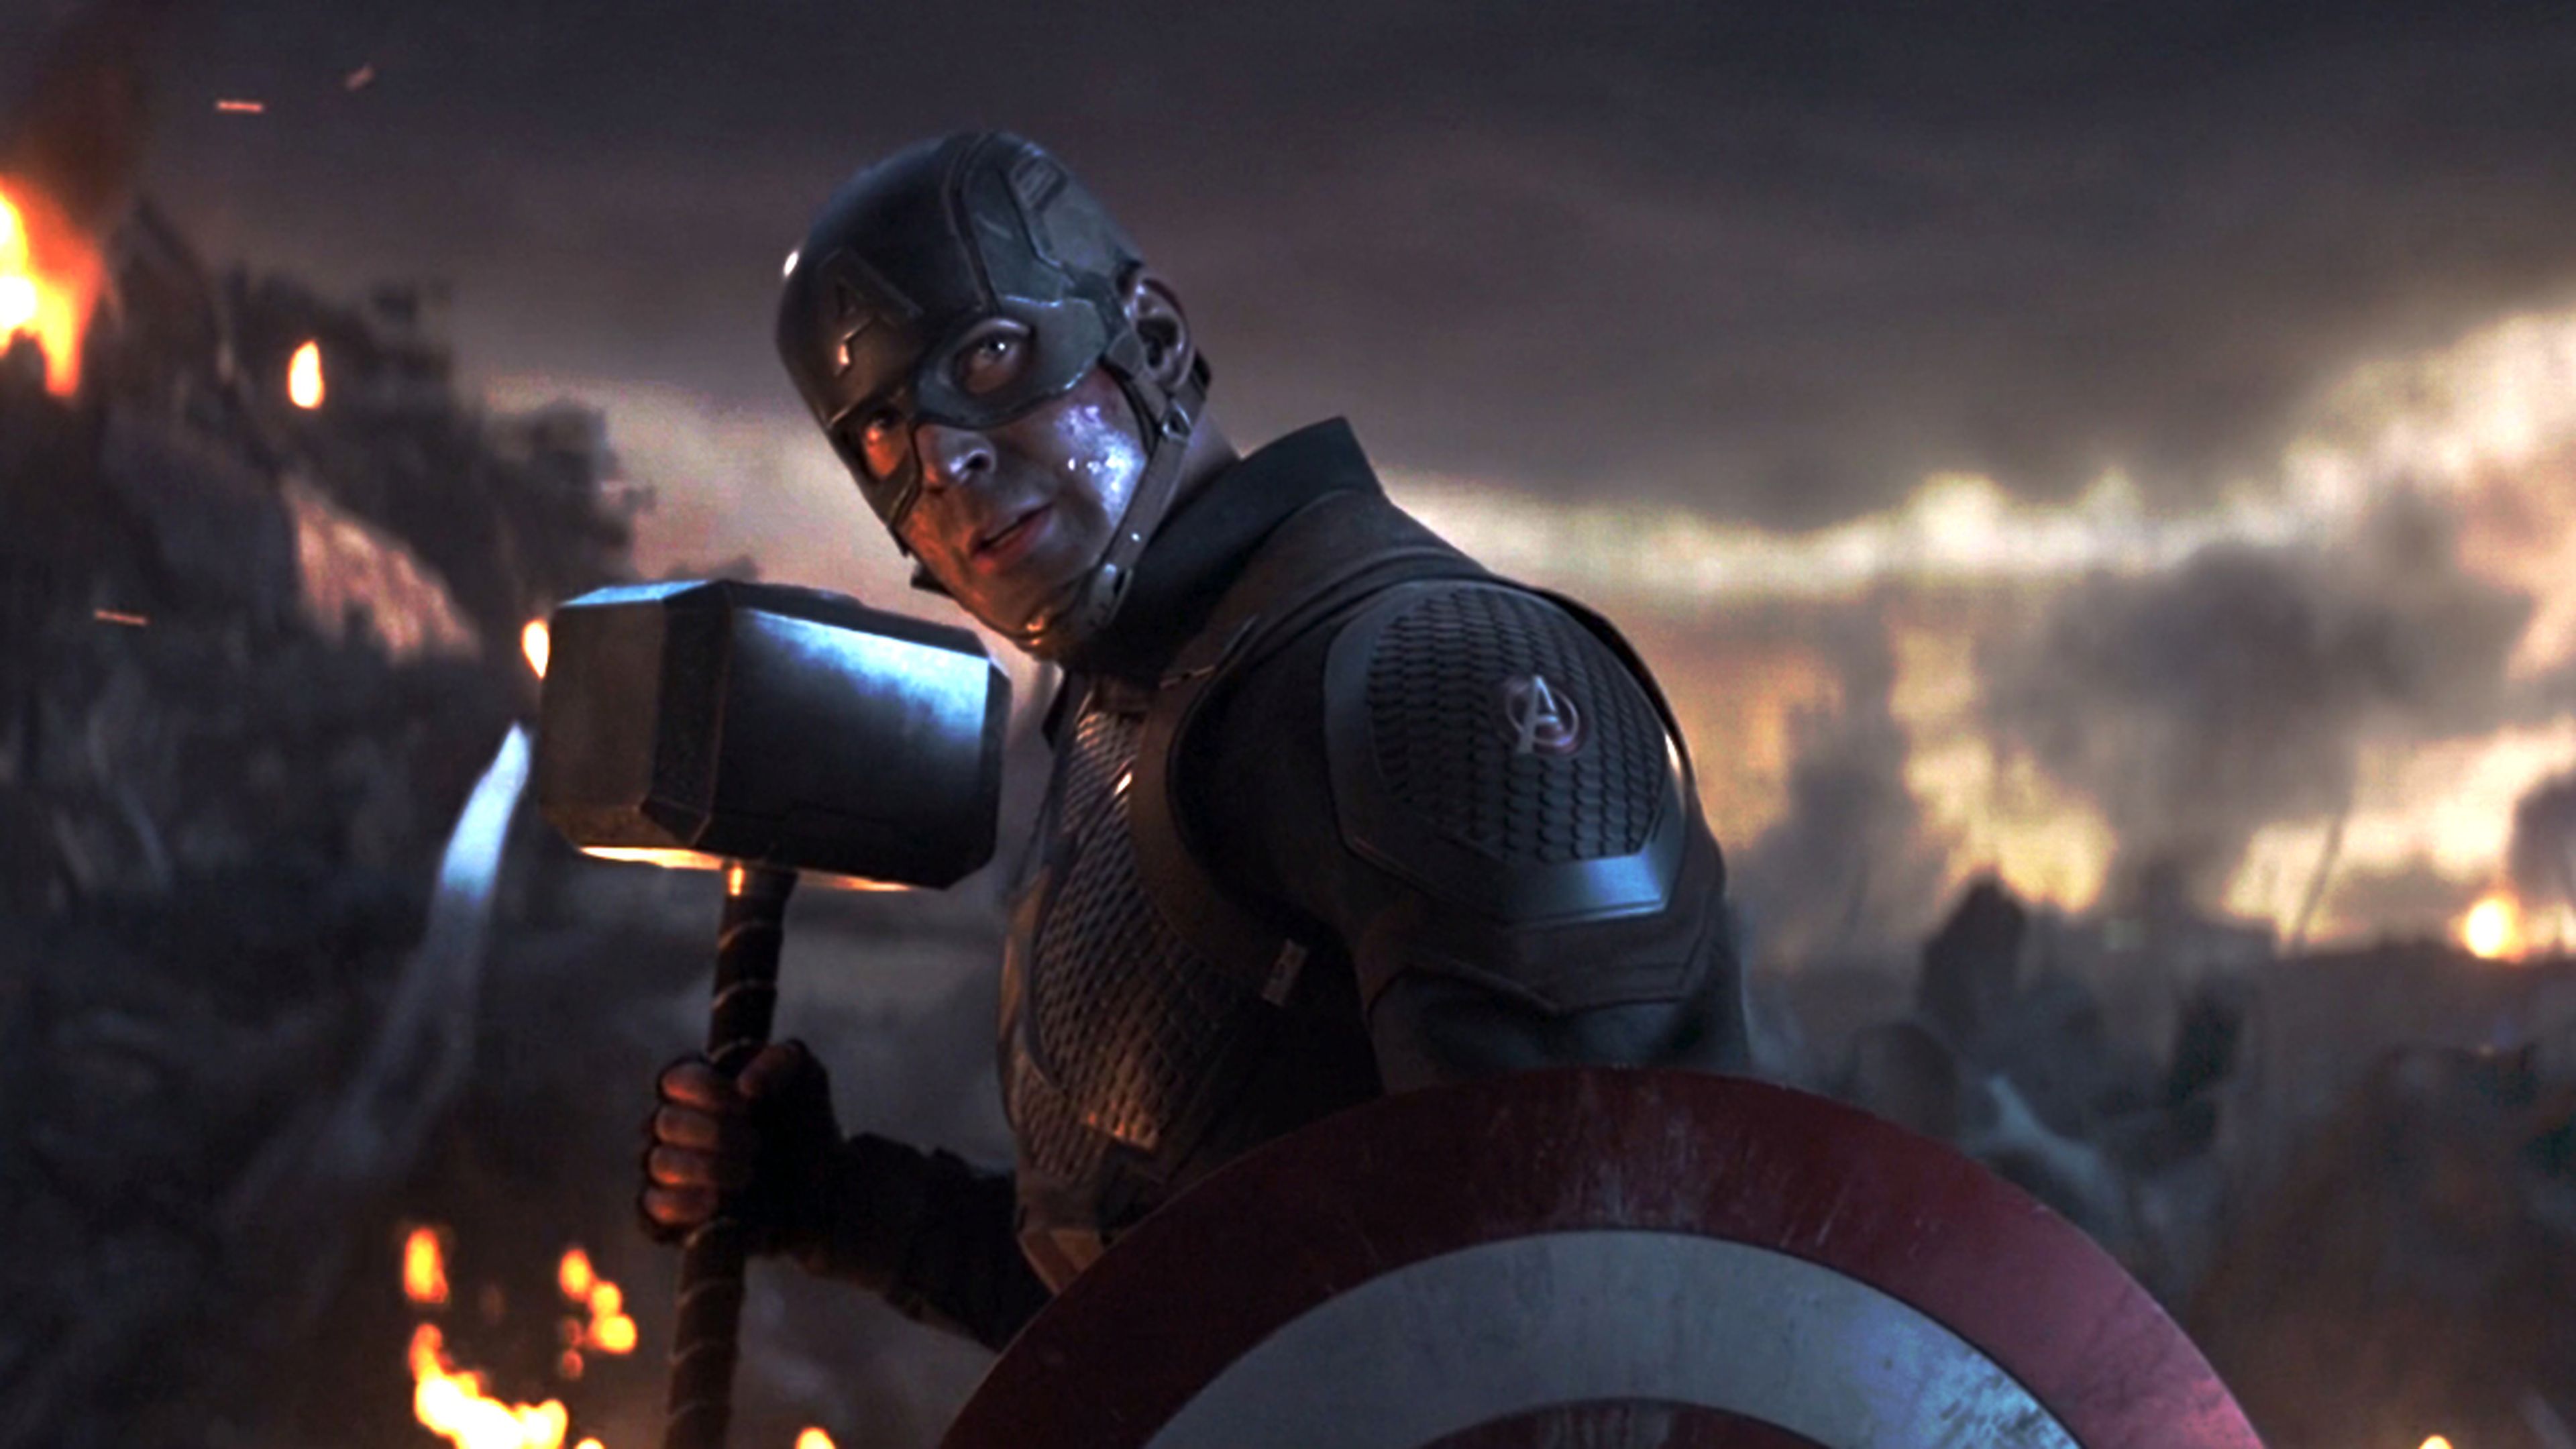 Vengadores Endgame - Capitán América empuñando el Mjolnir